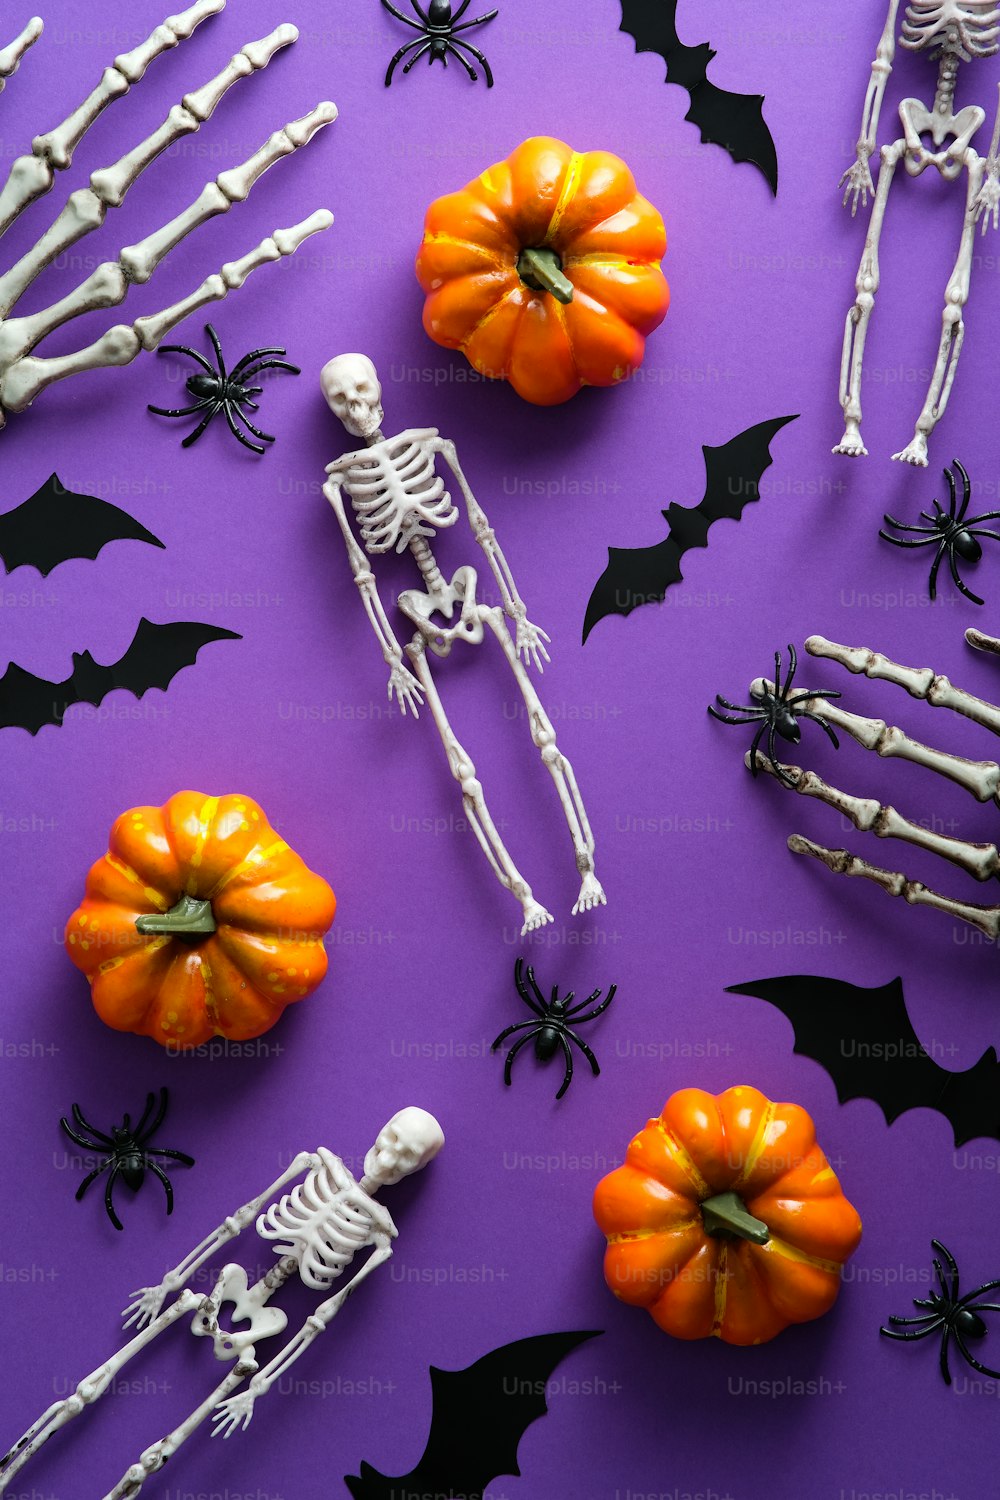 Buon concetto di festa di Halloween. Flat lay, vista dall'alto zucche, scheletri, pipistrelli, ragni su sfondo viola.